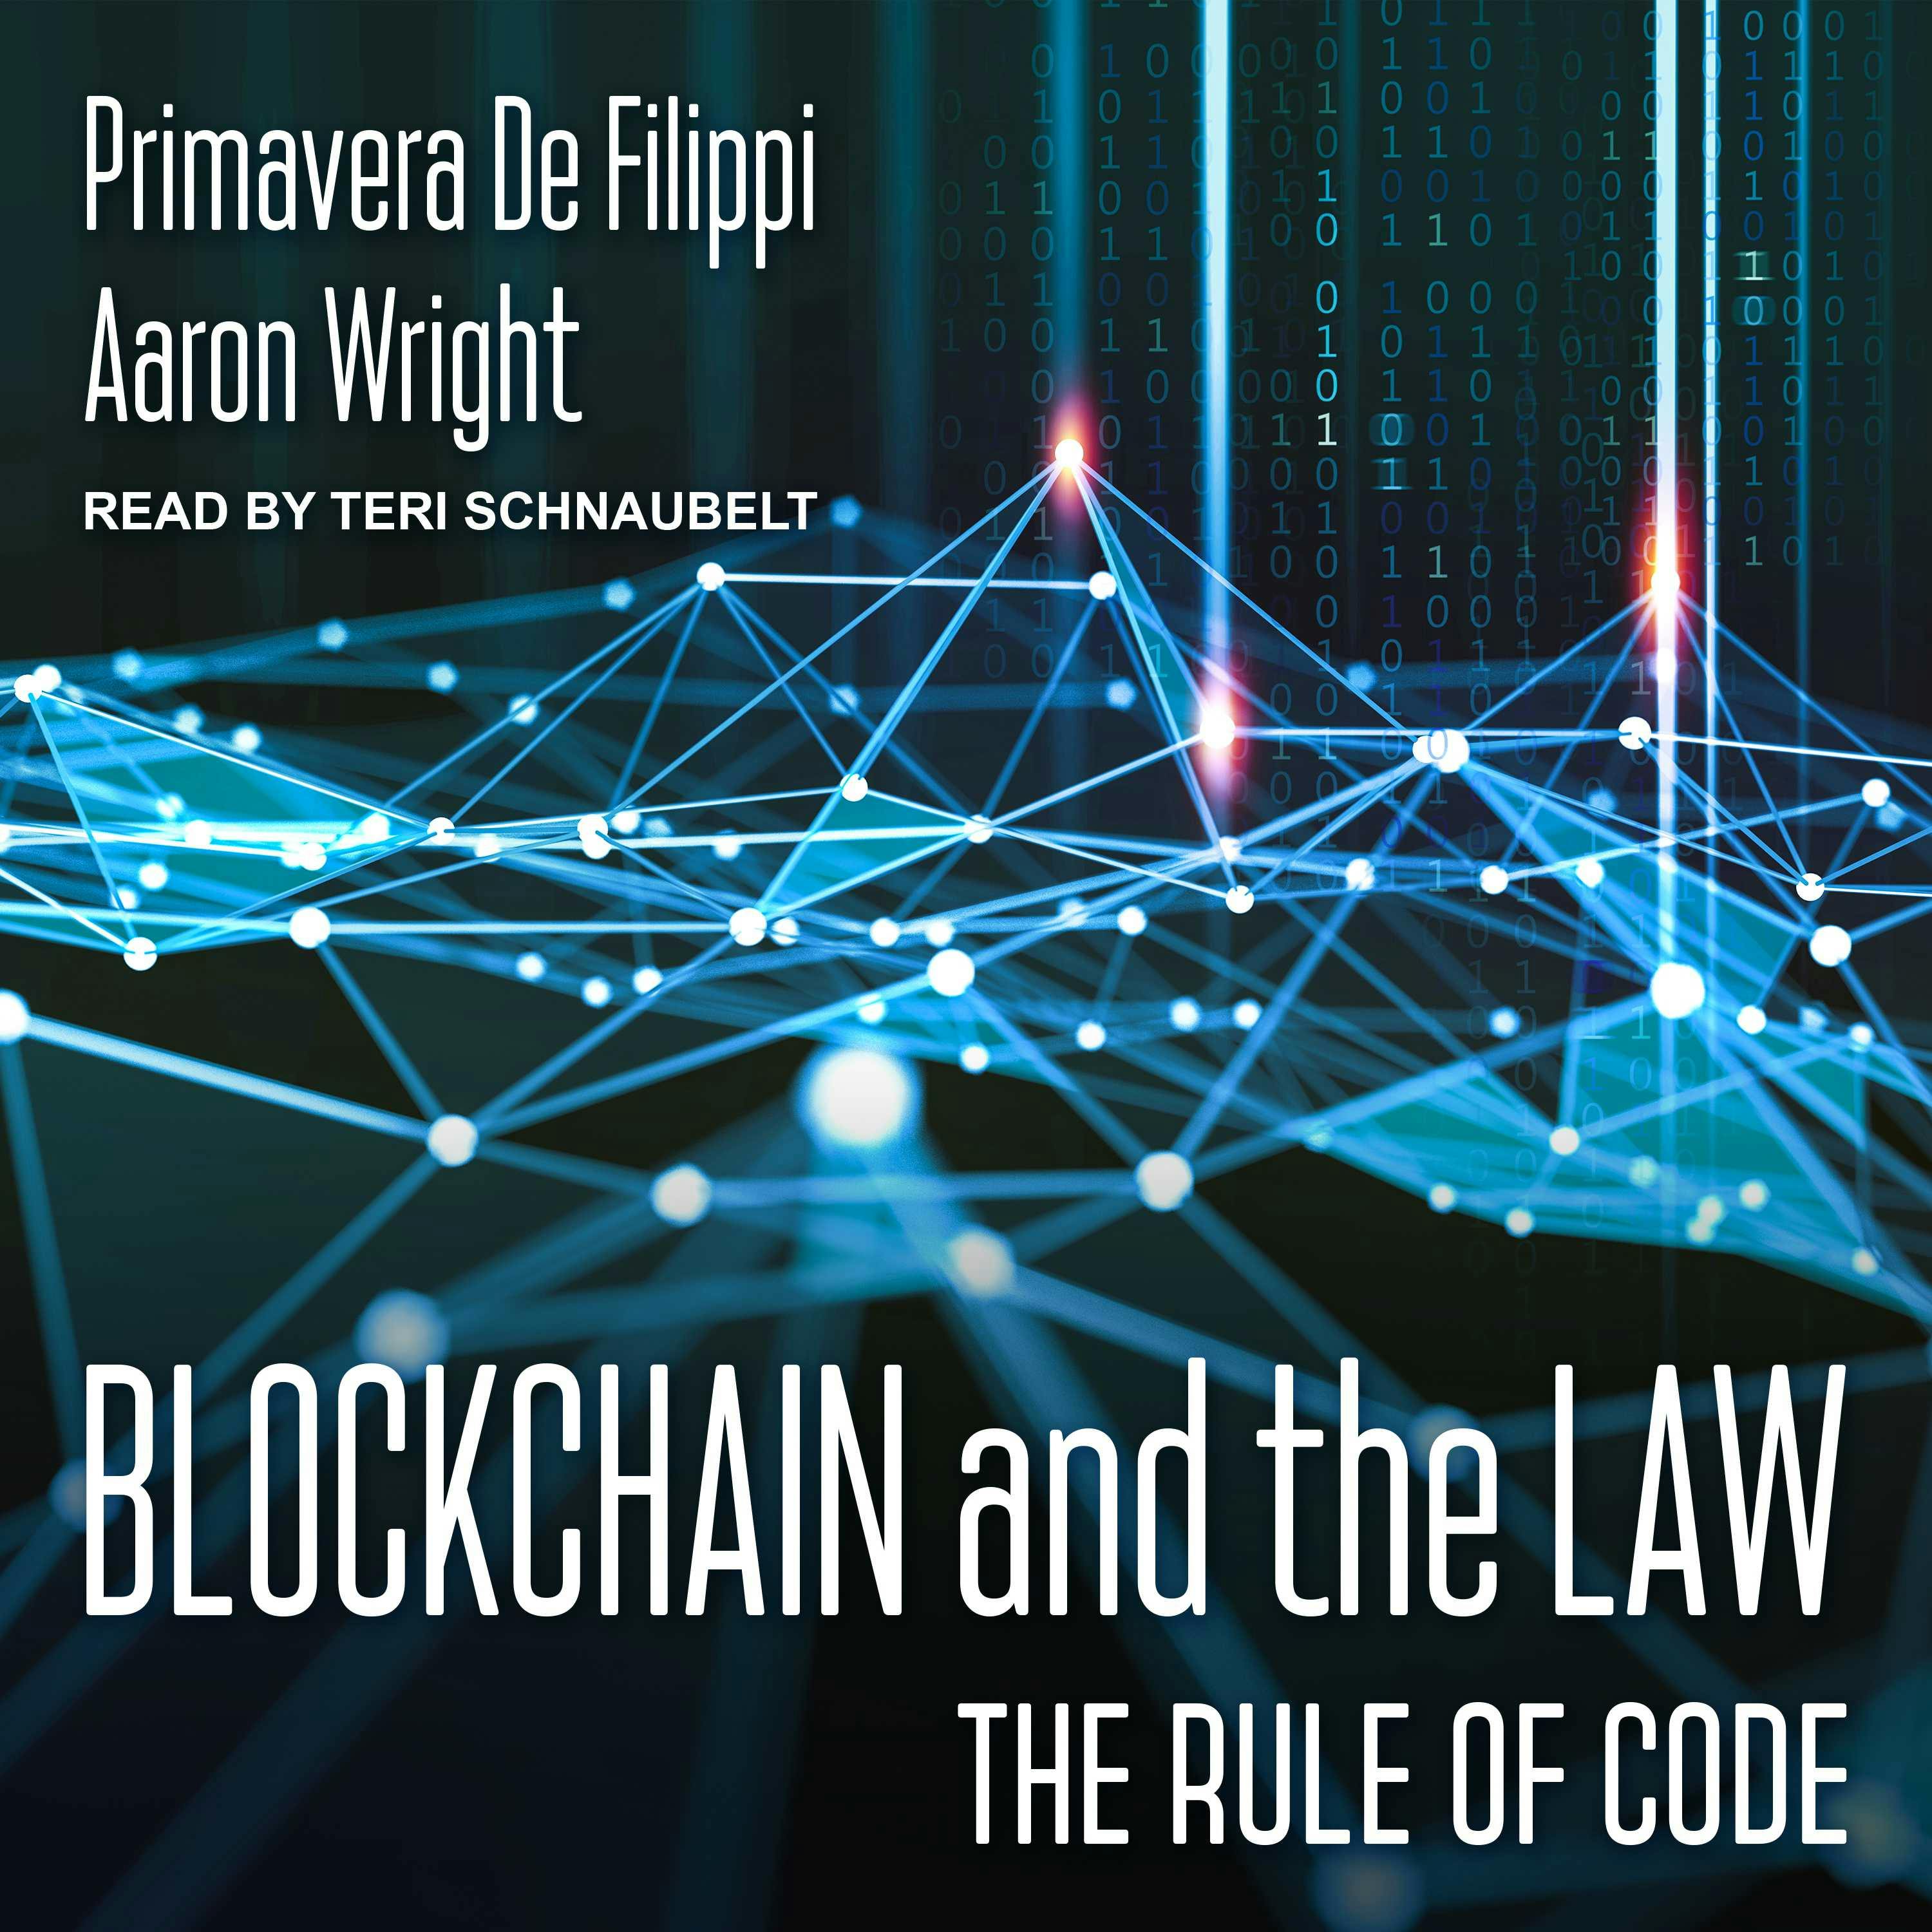 Blockchain and the Law: The Rule of Code - Aaron Wright, Primavera De Filippi